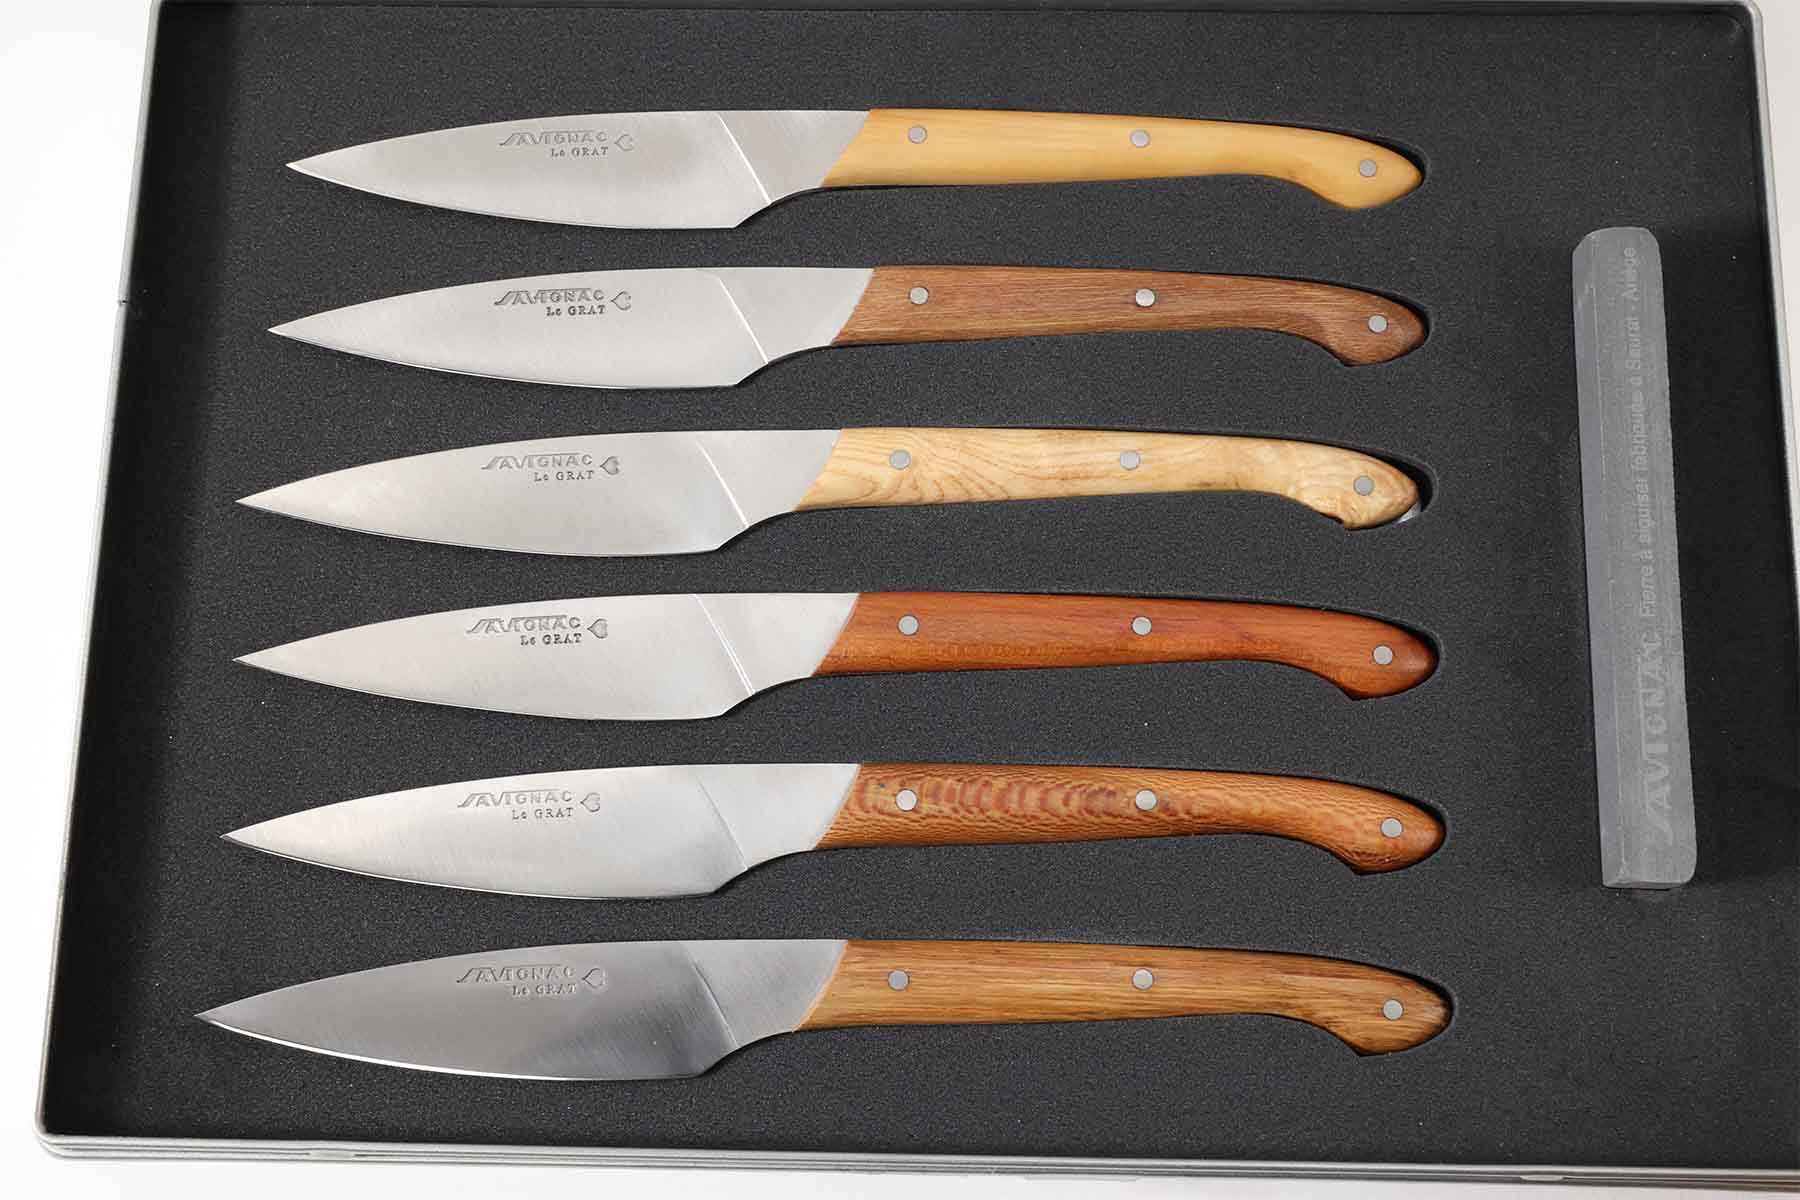 Coffret de 6 couteaux par Savignac -Le Grat 21cm - Bois Assortis